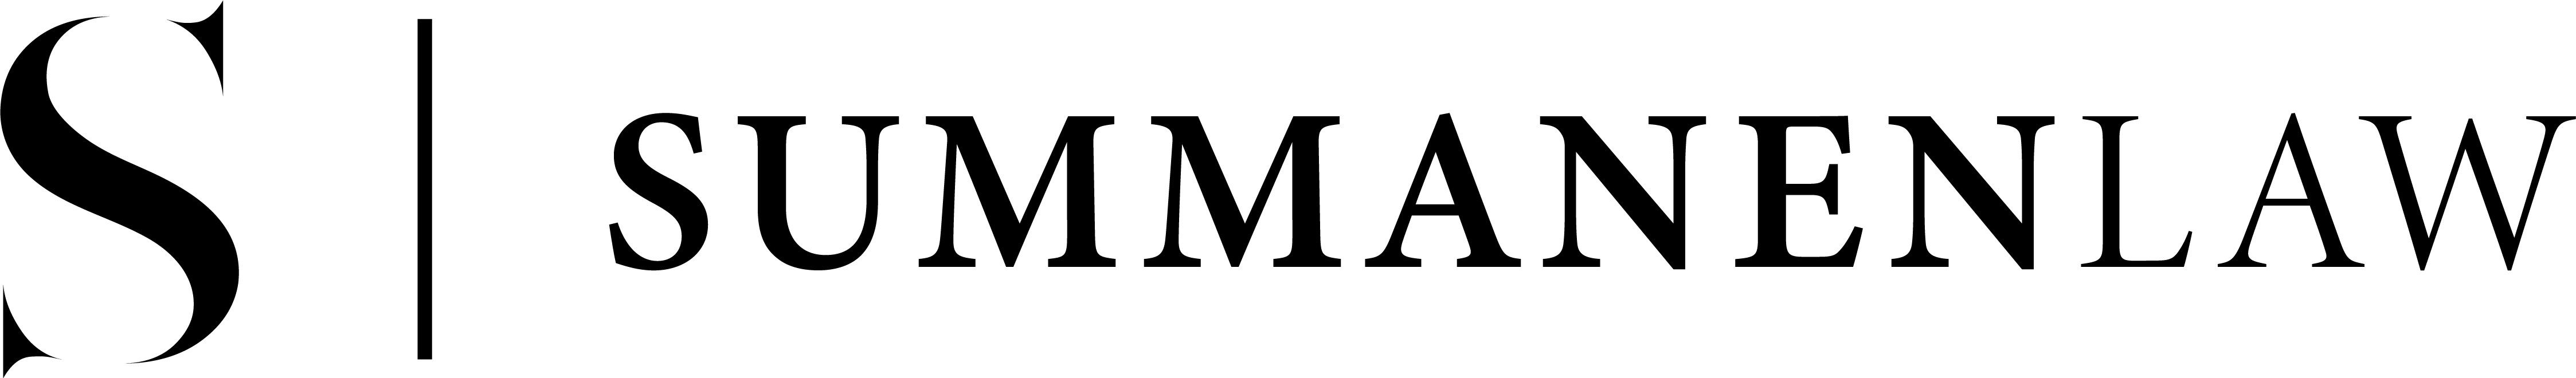 SummanenLAW logo.